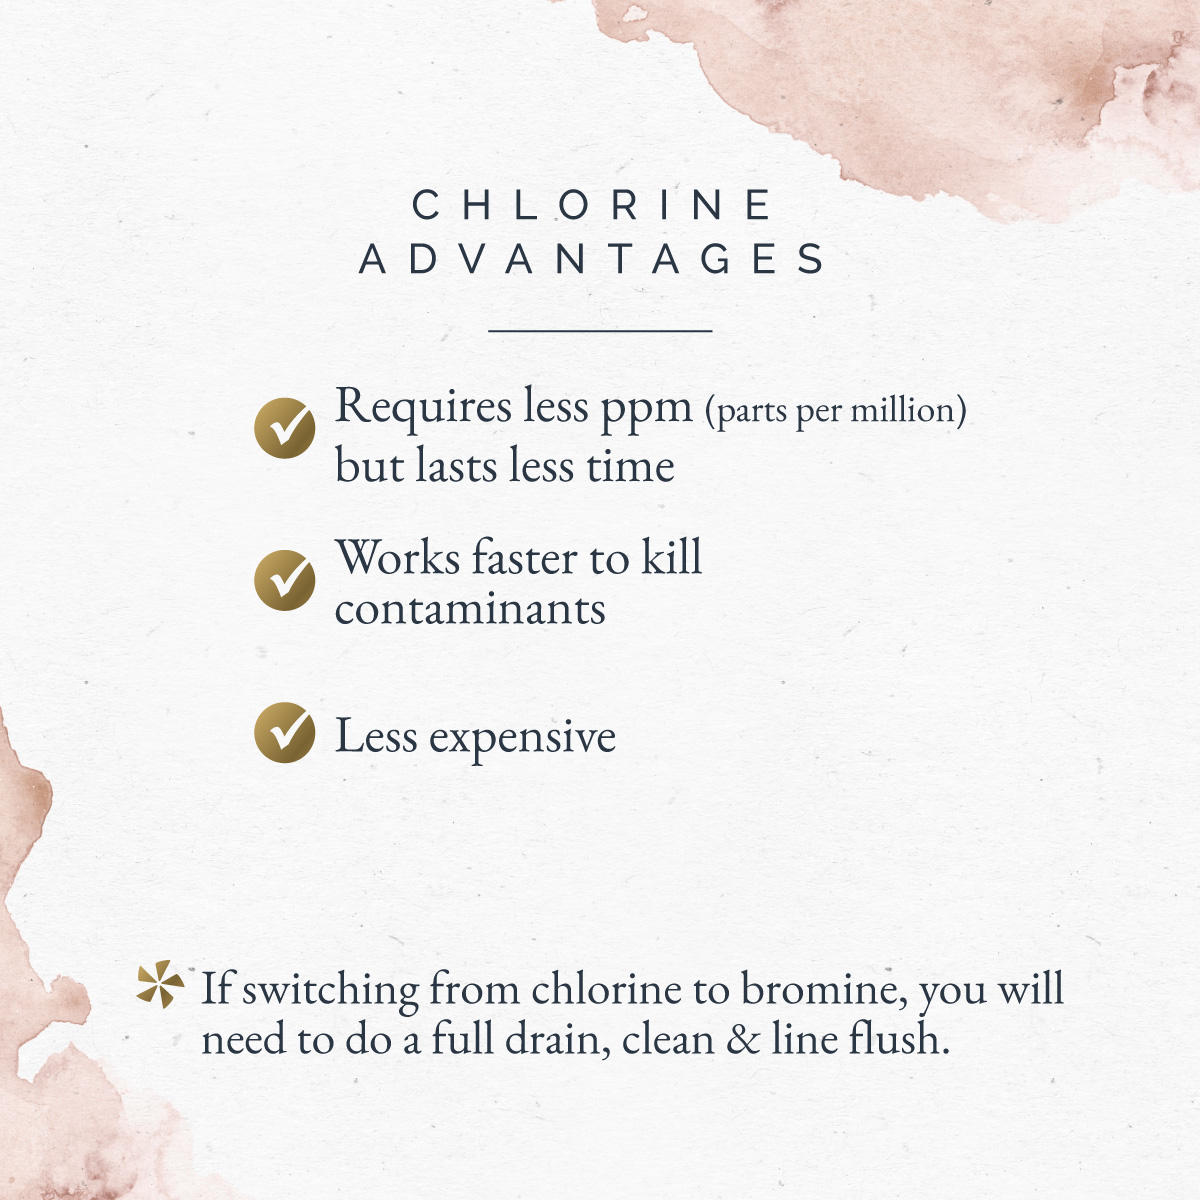 Chlorine advantages